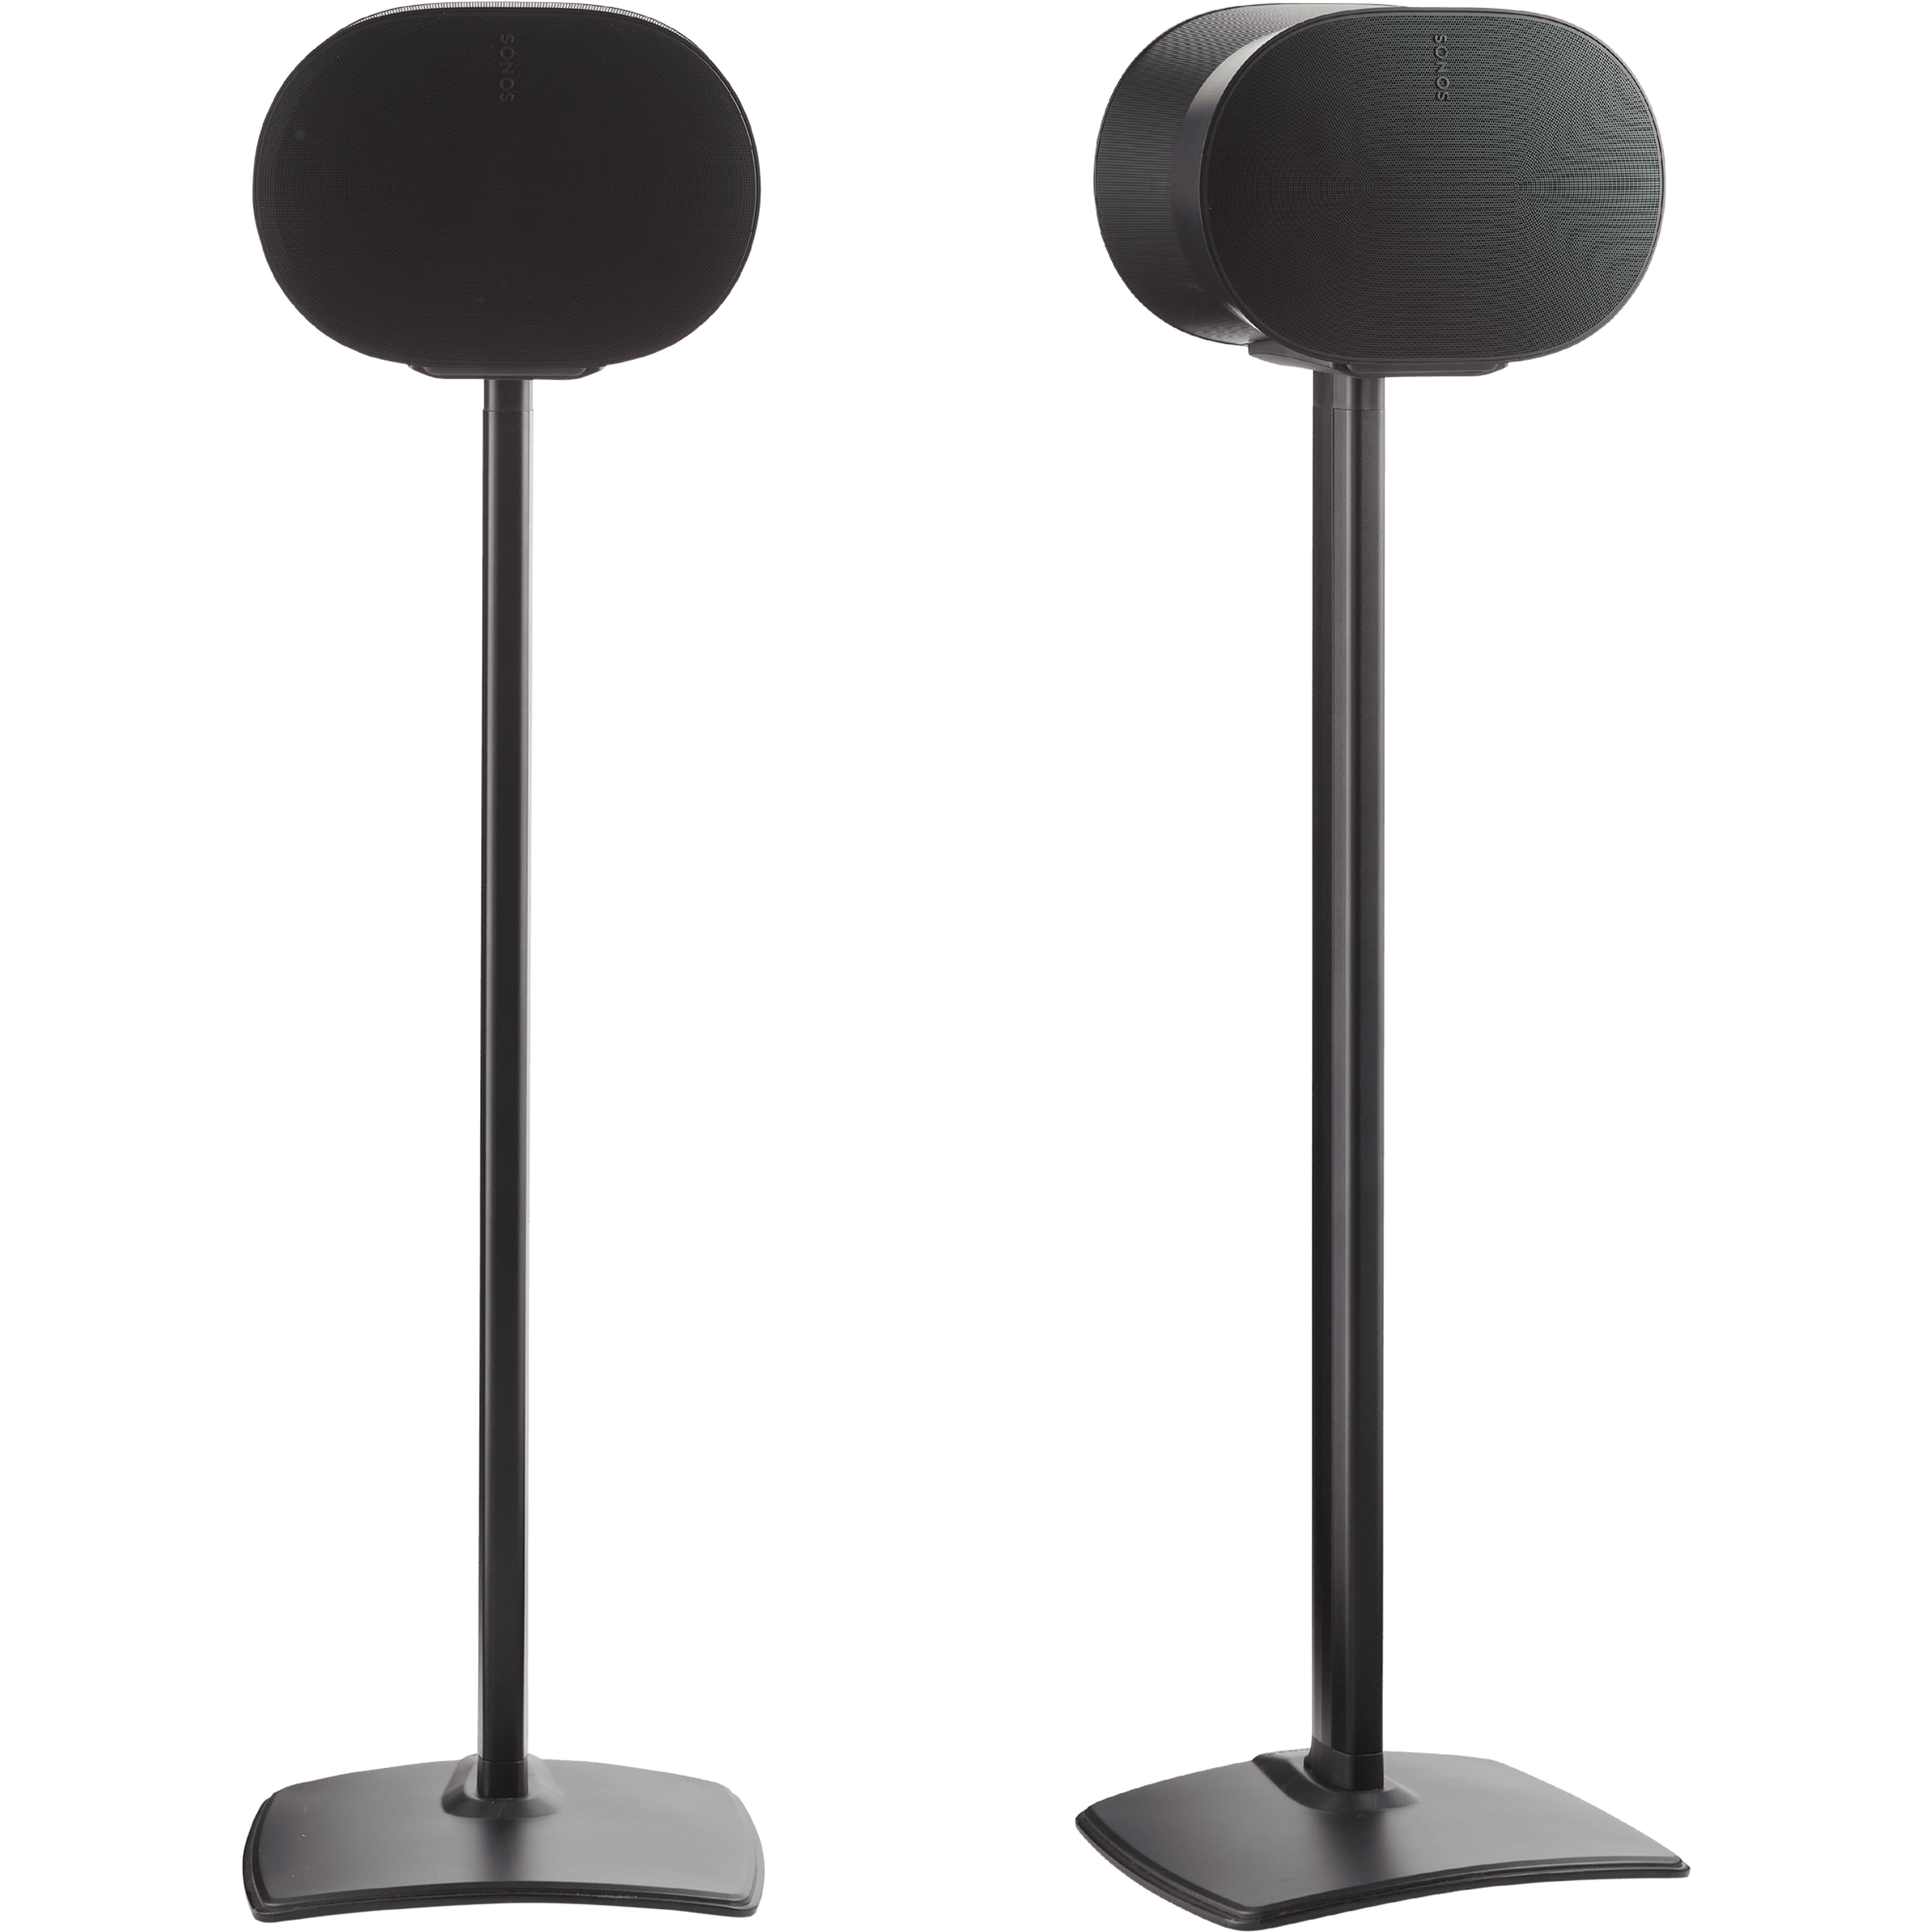 Immagine di una coppia di supporti a pavimento Sanus neri su cui sono montati due speaker Sonos Era 300 neri